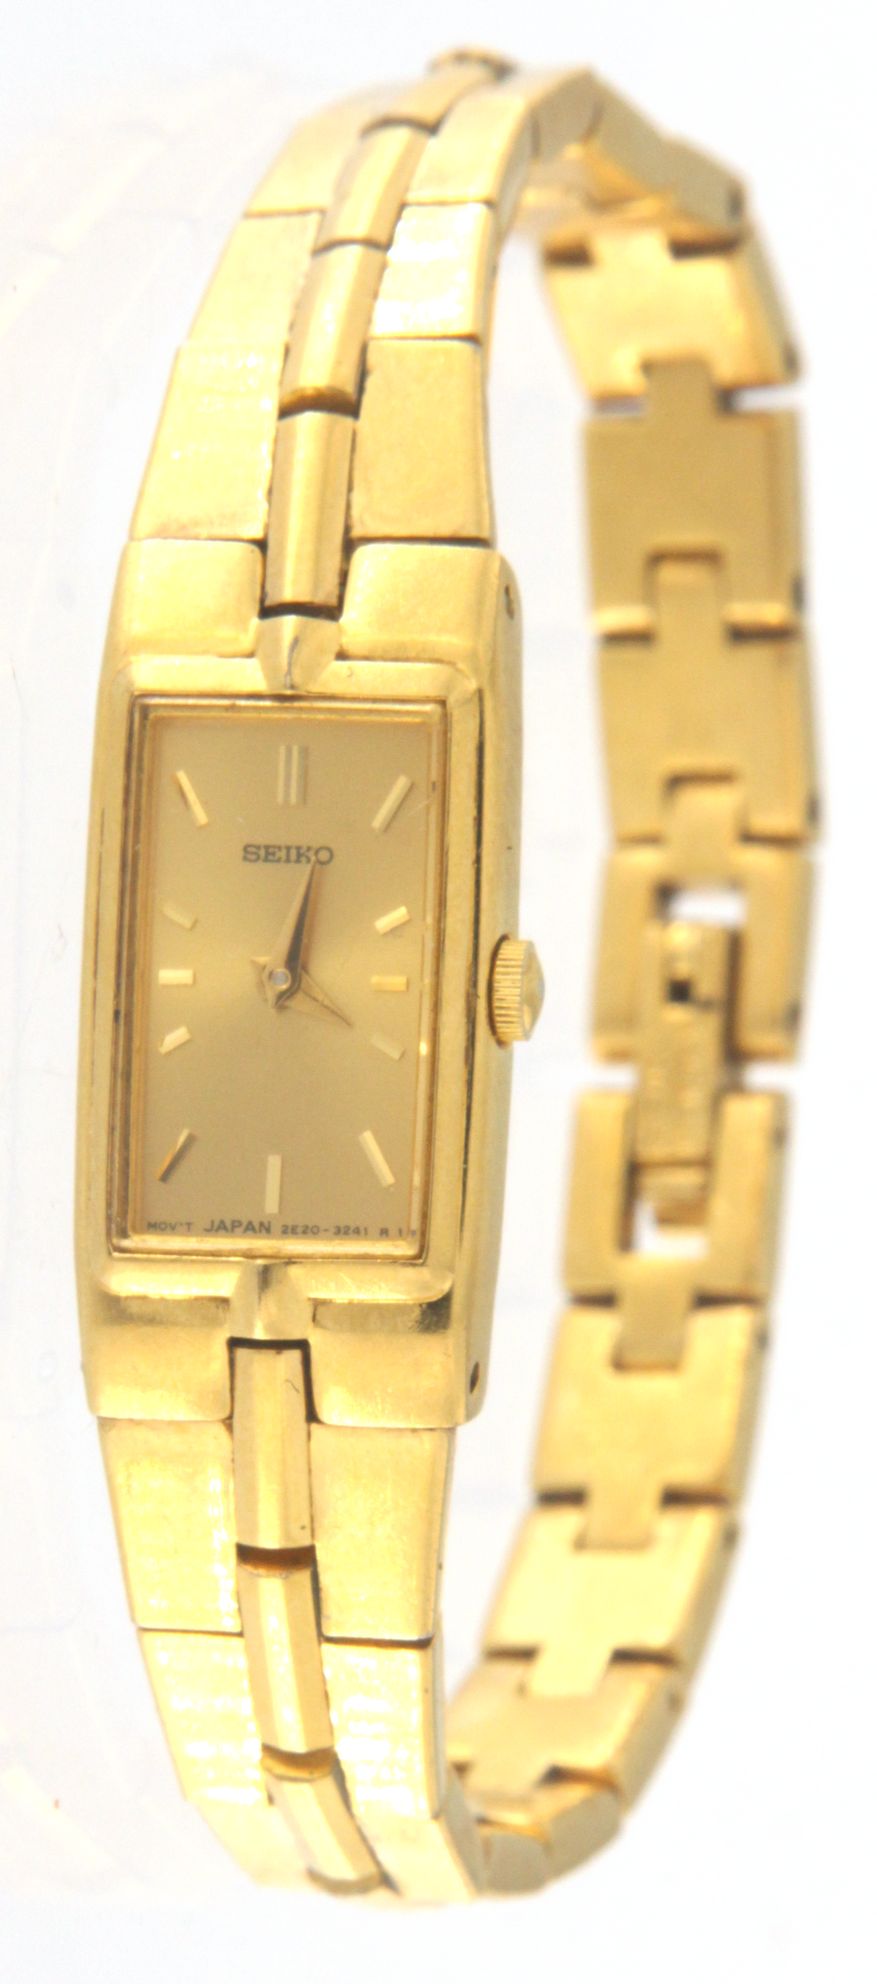 Seiko Wrist watch 2E20-7479